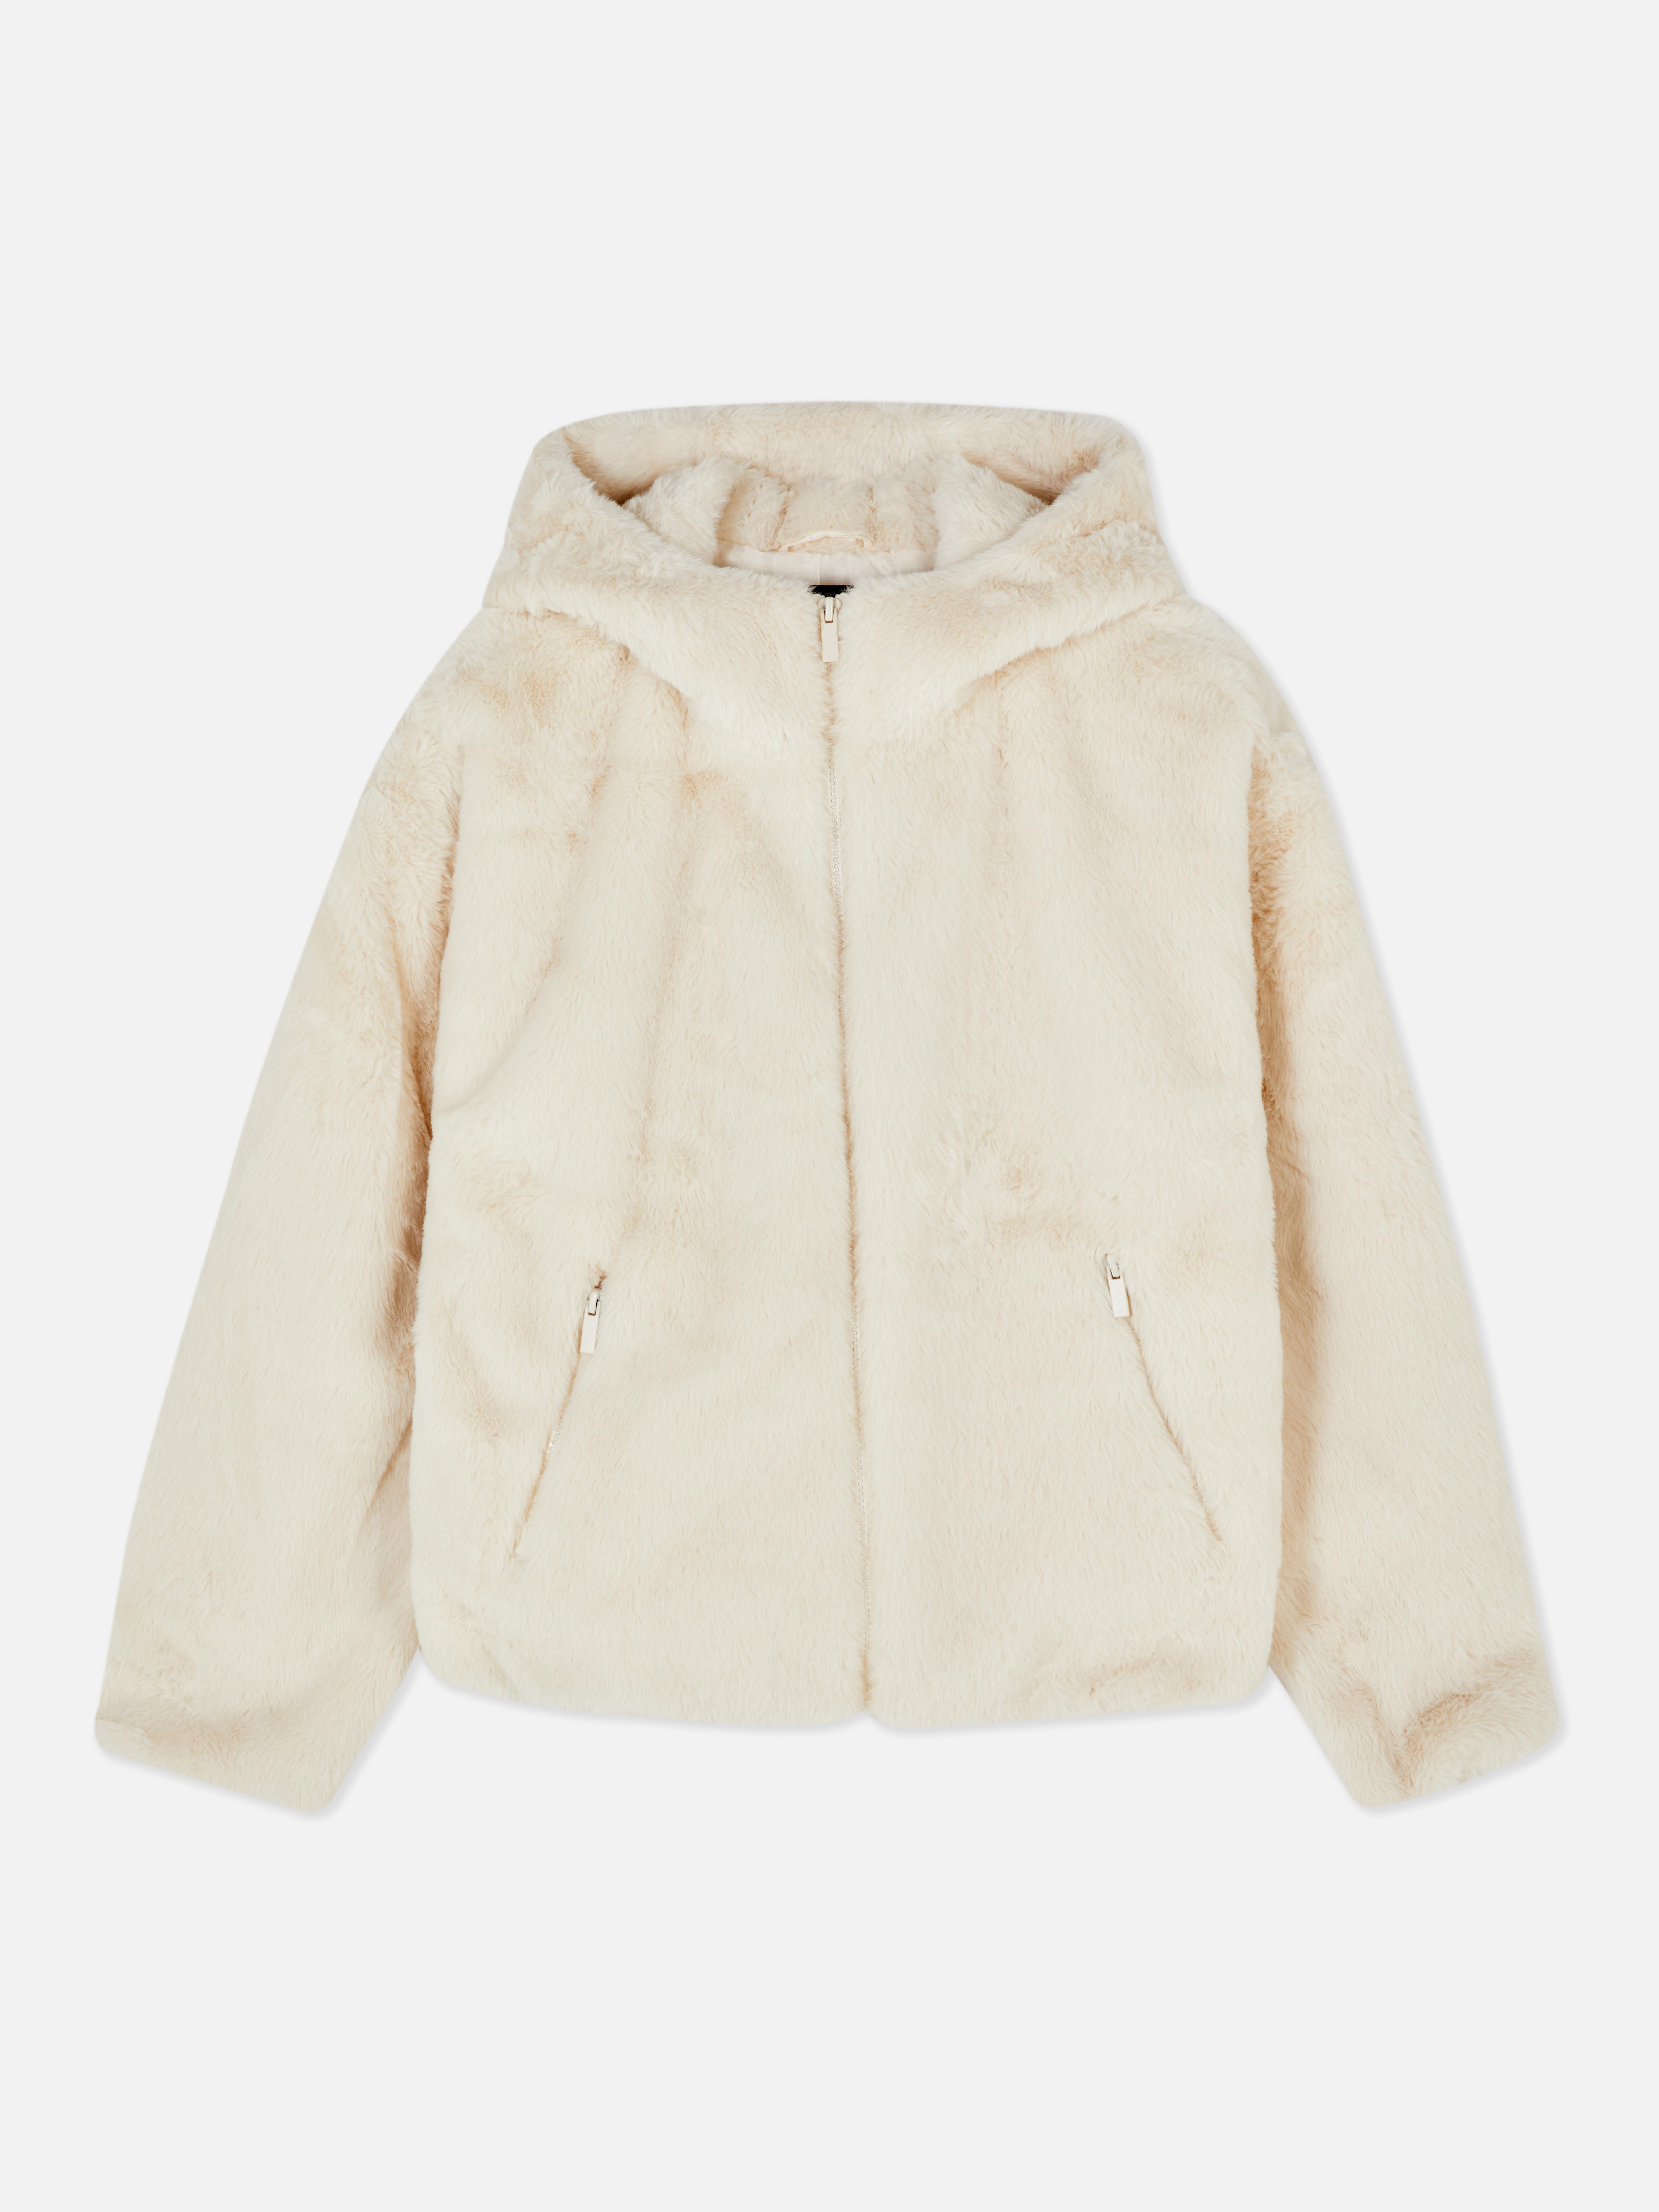 Faux Fur Hooded Jacket | Women's Jackets & Coats | Women's Clothing ...